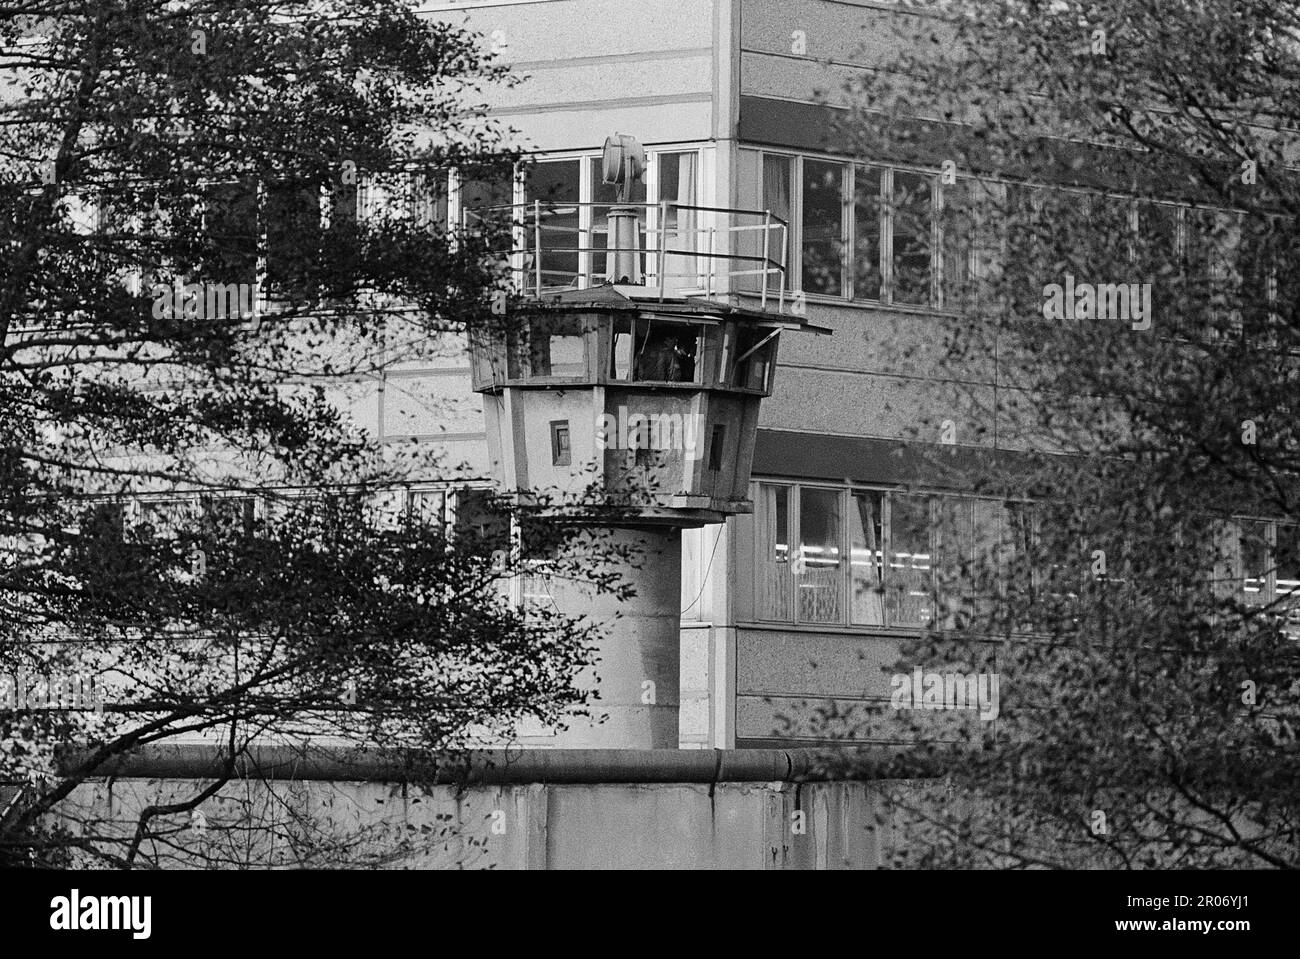 -Frontiera interna tra la Repubblica federale di Germania (RFT) e la Repubblica democratica tedesca (DDR), torre di guardia della polizia di frontiera della DDR (volkspolizei) presso una fabbrica, ottobre 1985-confinamento interno fra Repubblica Federale Tedesca (RFT) e Repubblica democratica Tedesca (DDR), torre di guardia della polizia di facciata della DDR ( volkspolizei ) nei pressi di una fabbrica, ottobre 1985 Foto Stock